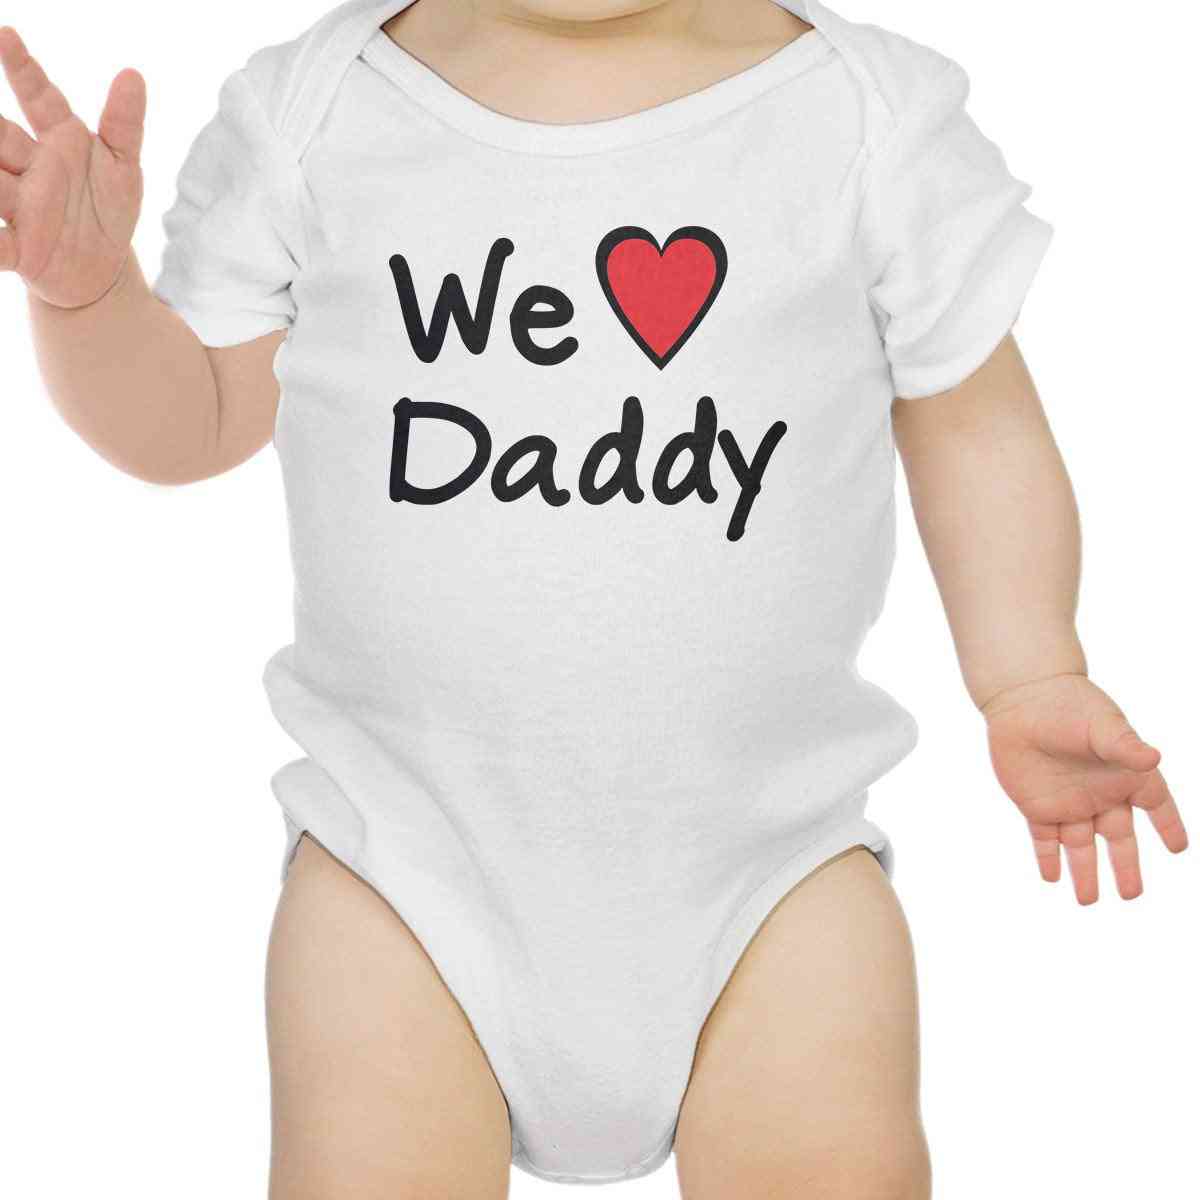 Adoriamo papà - body bianco carino per neonati